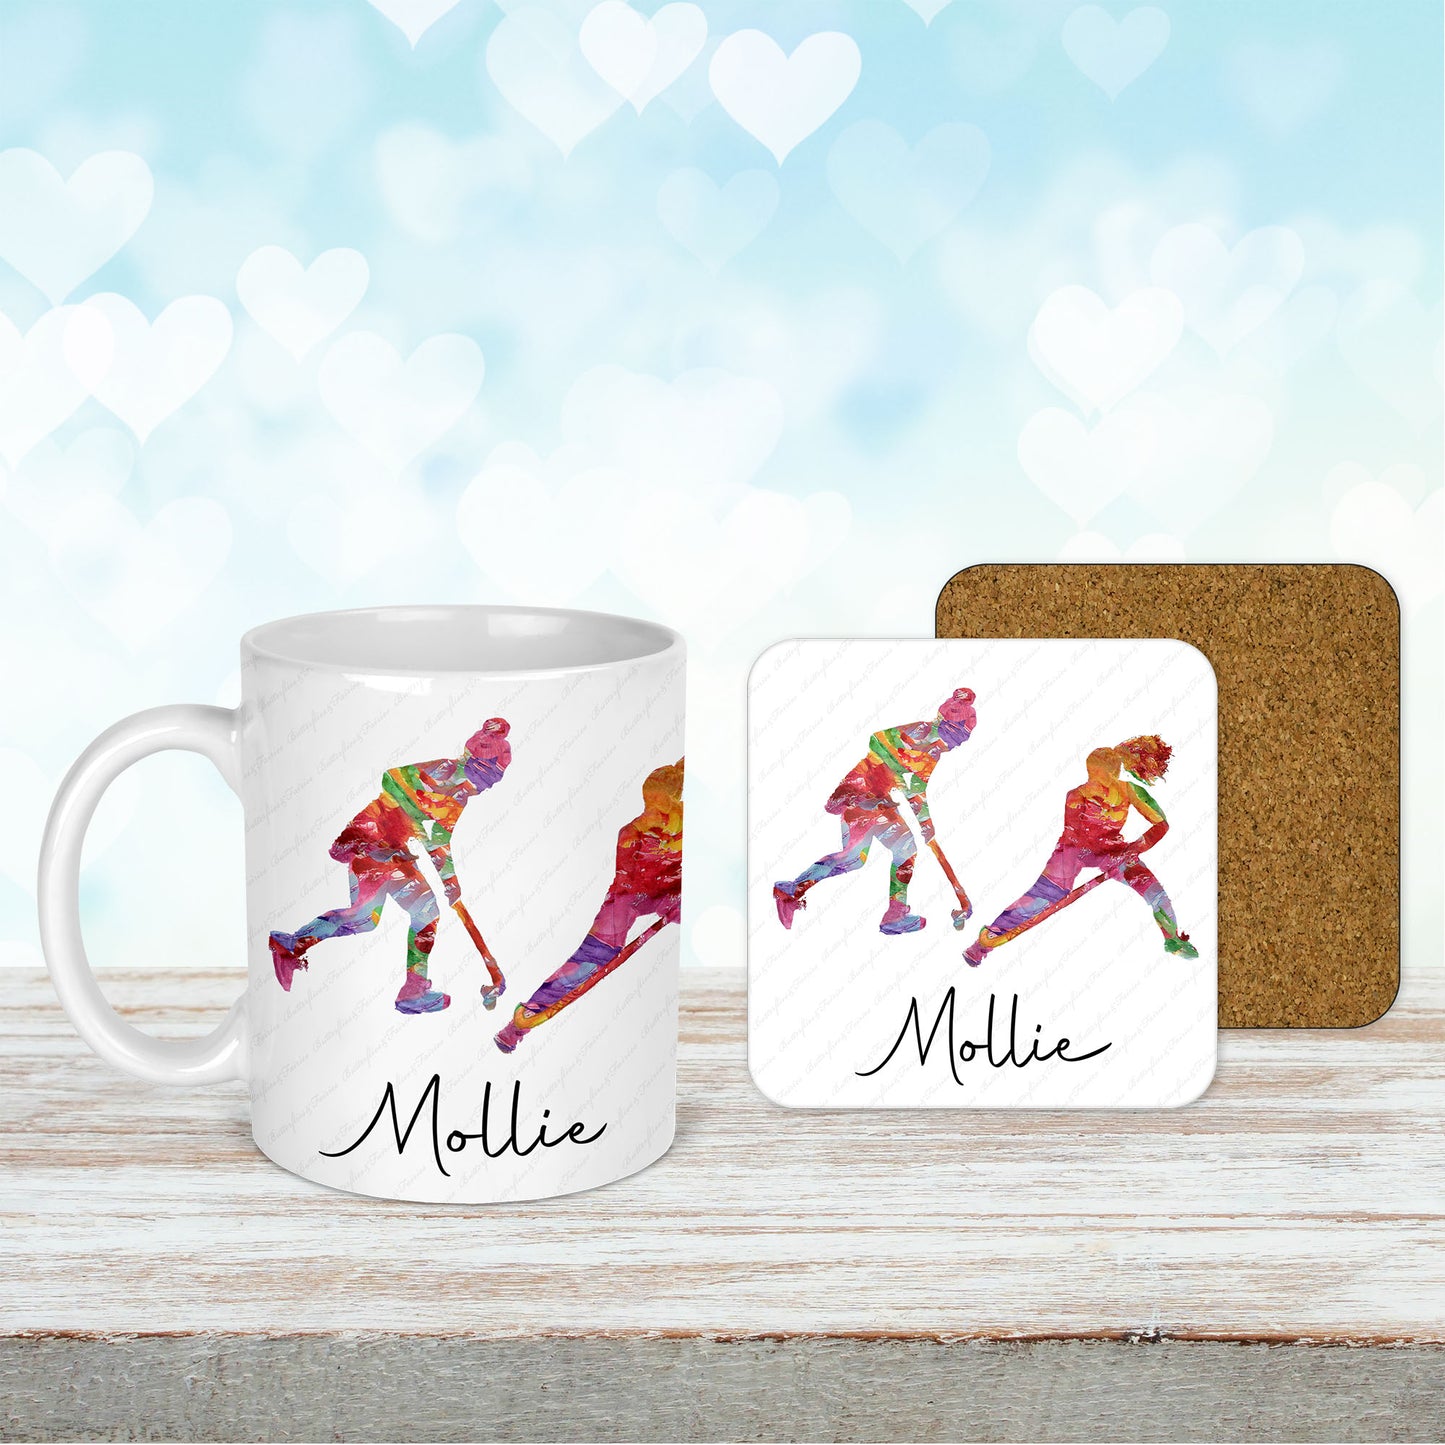 Personalised Hockey Mug and Coaster Set